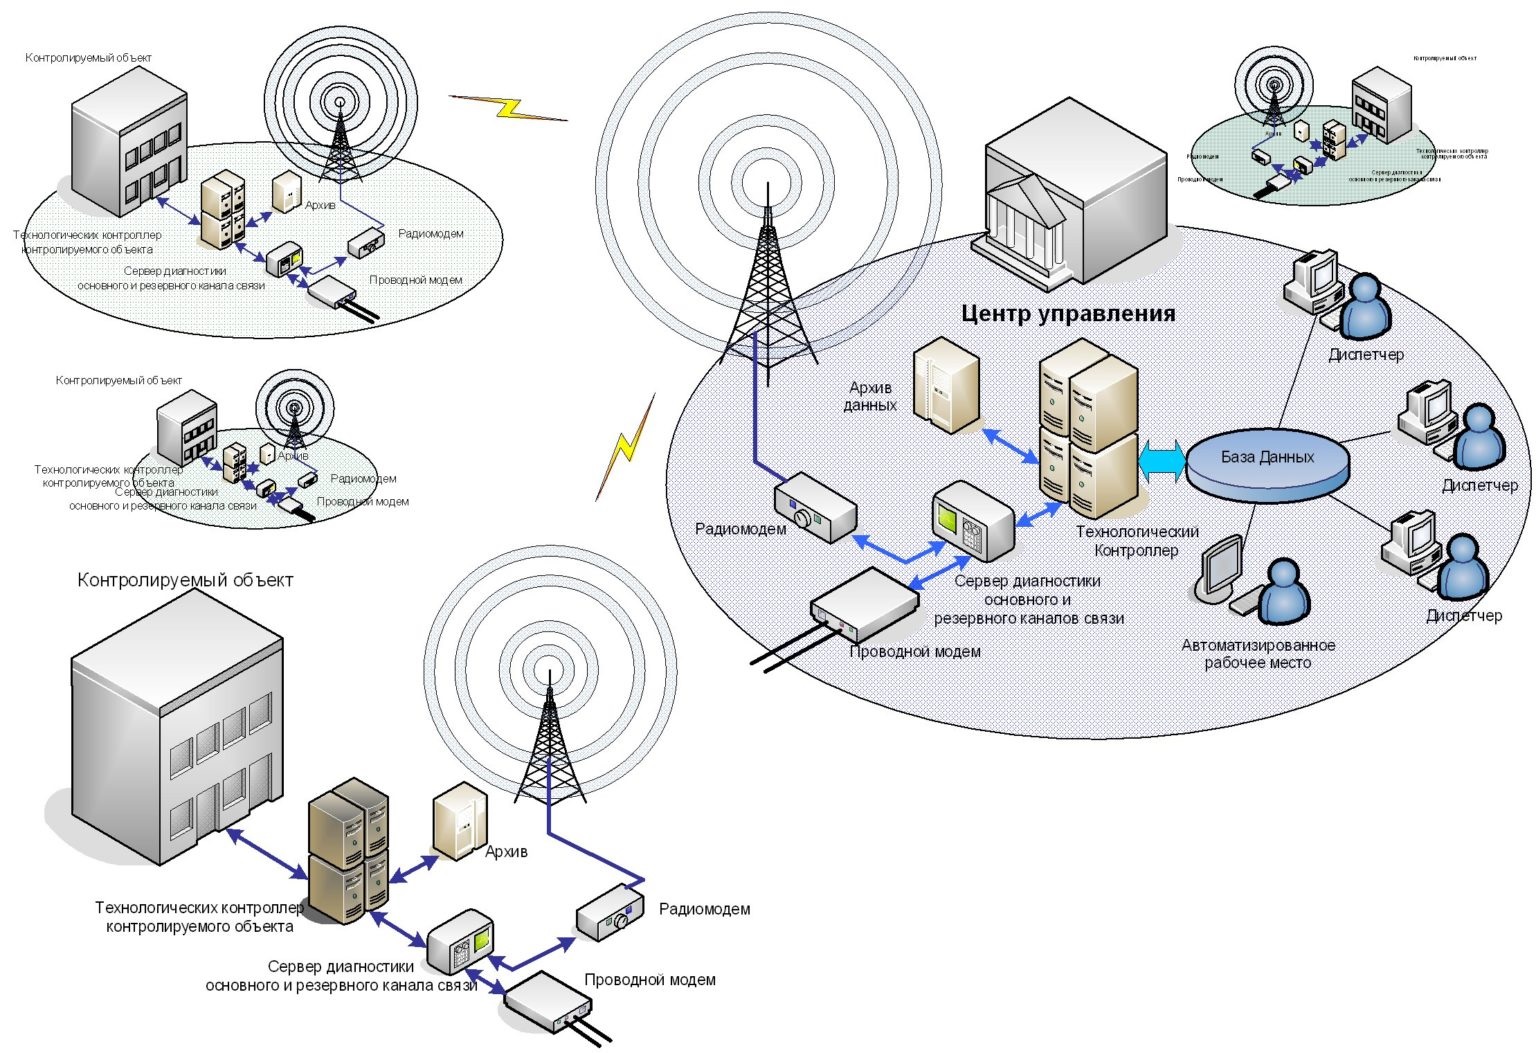 Регистрация объектов связи. Схема сети передачи данных. Схема организации сети передачи данных. Структурная схема оптоволоконного устройства. Структурная схема сети передачи данных.